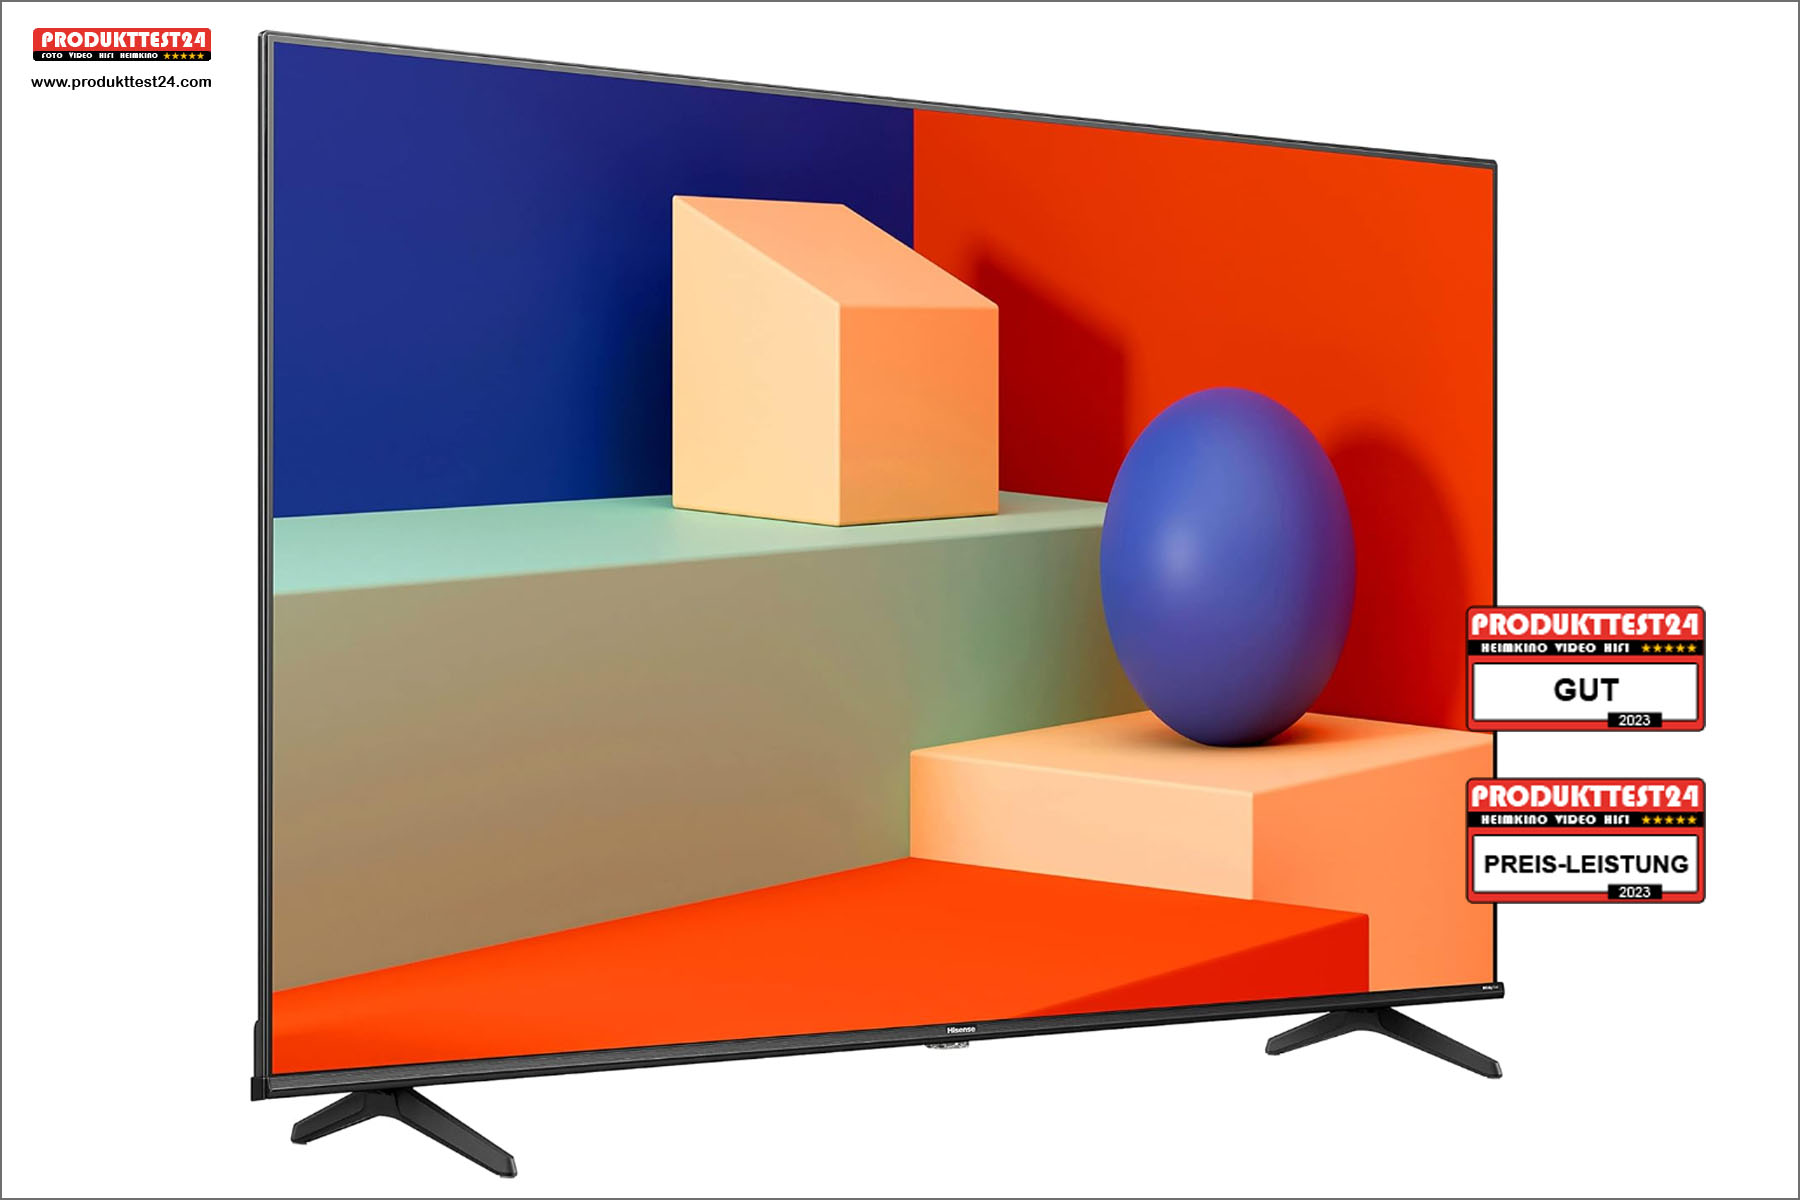 Der Hisense 50E6KT ist einer der günstigsten 4K-Fernseher